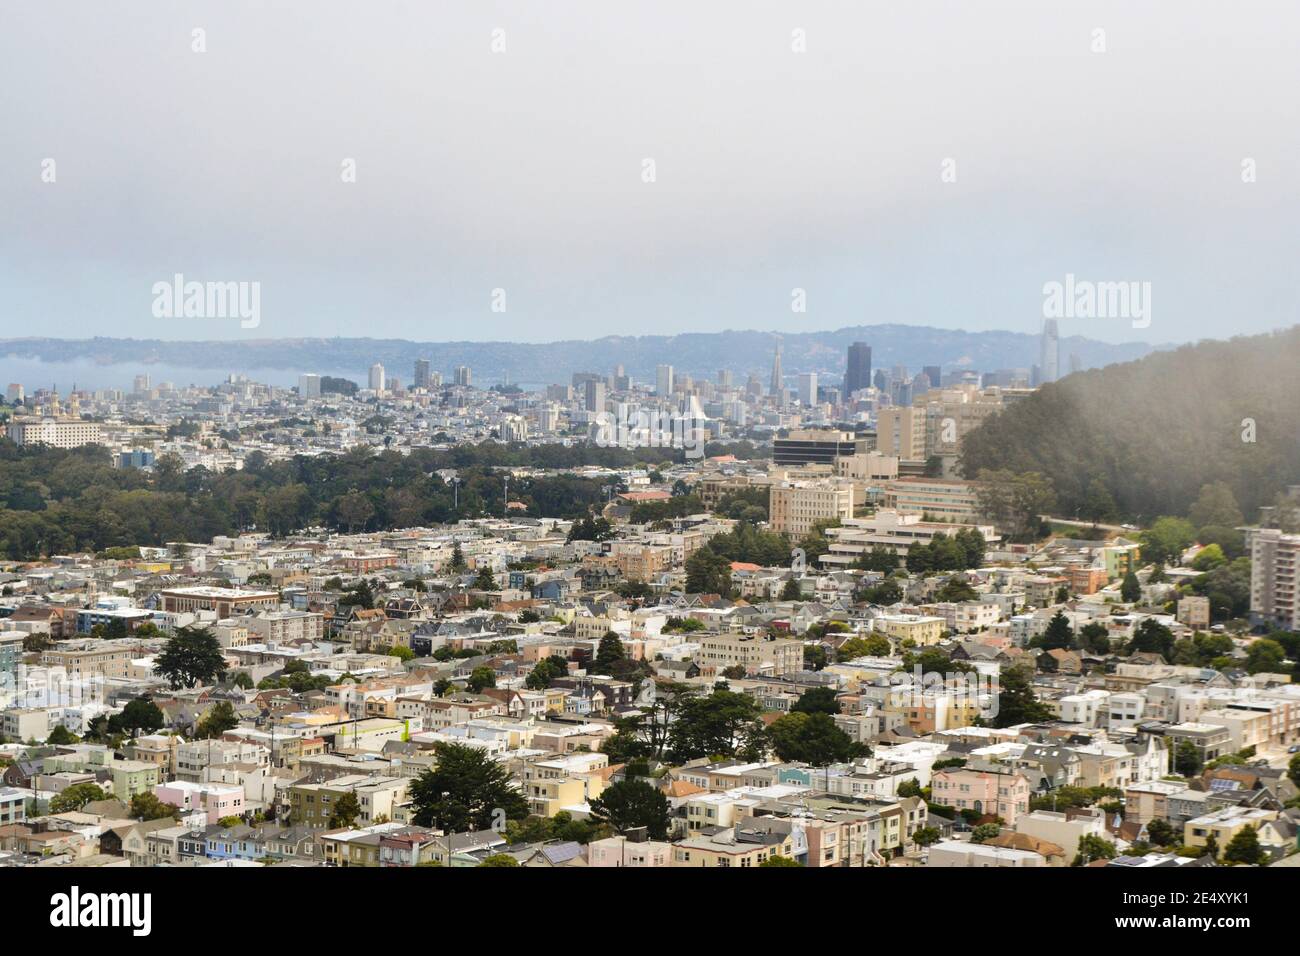 Vista de San Francisco desde Grandview Park Inner Sunset, California, mostrando casas residenciales y parques, con el mar y paisaje urbano en la distancia Foto de stock